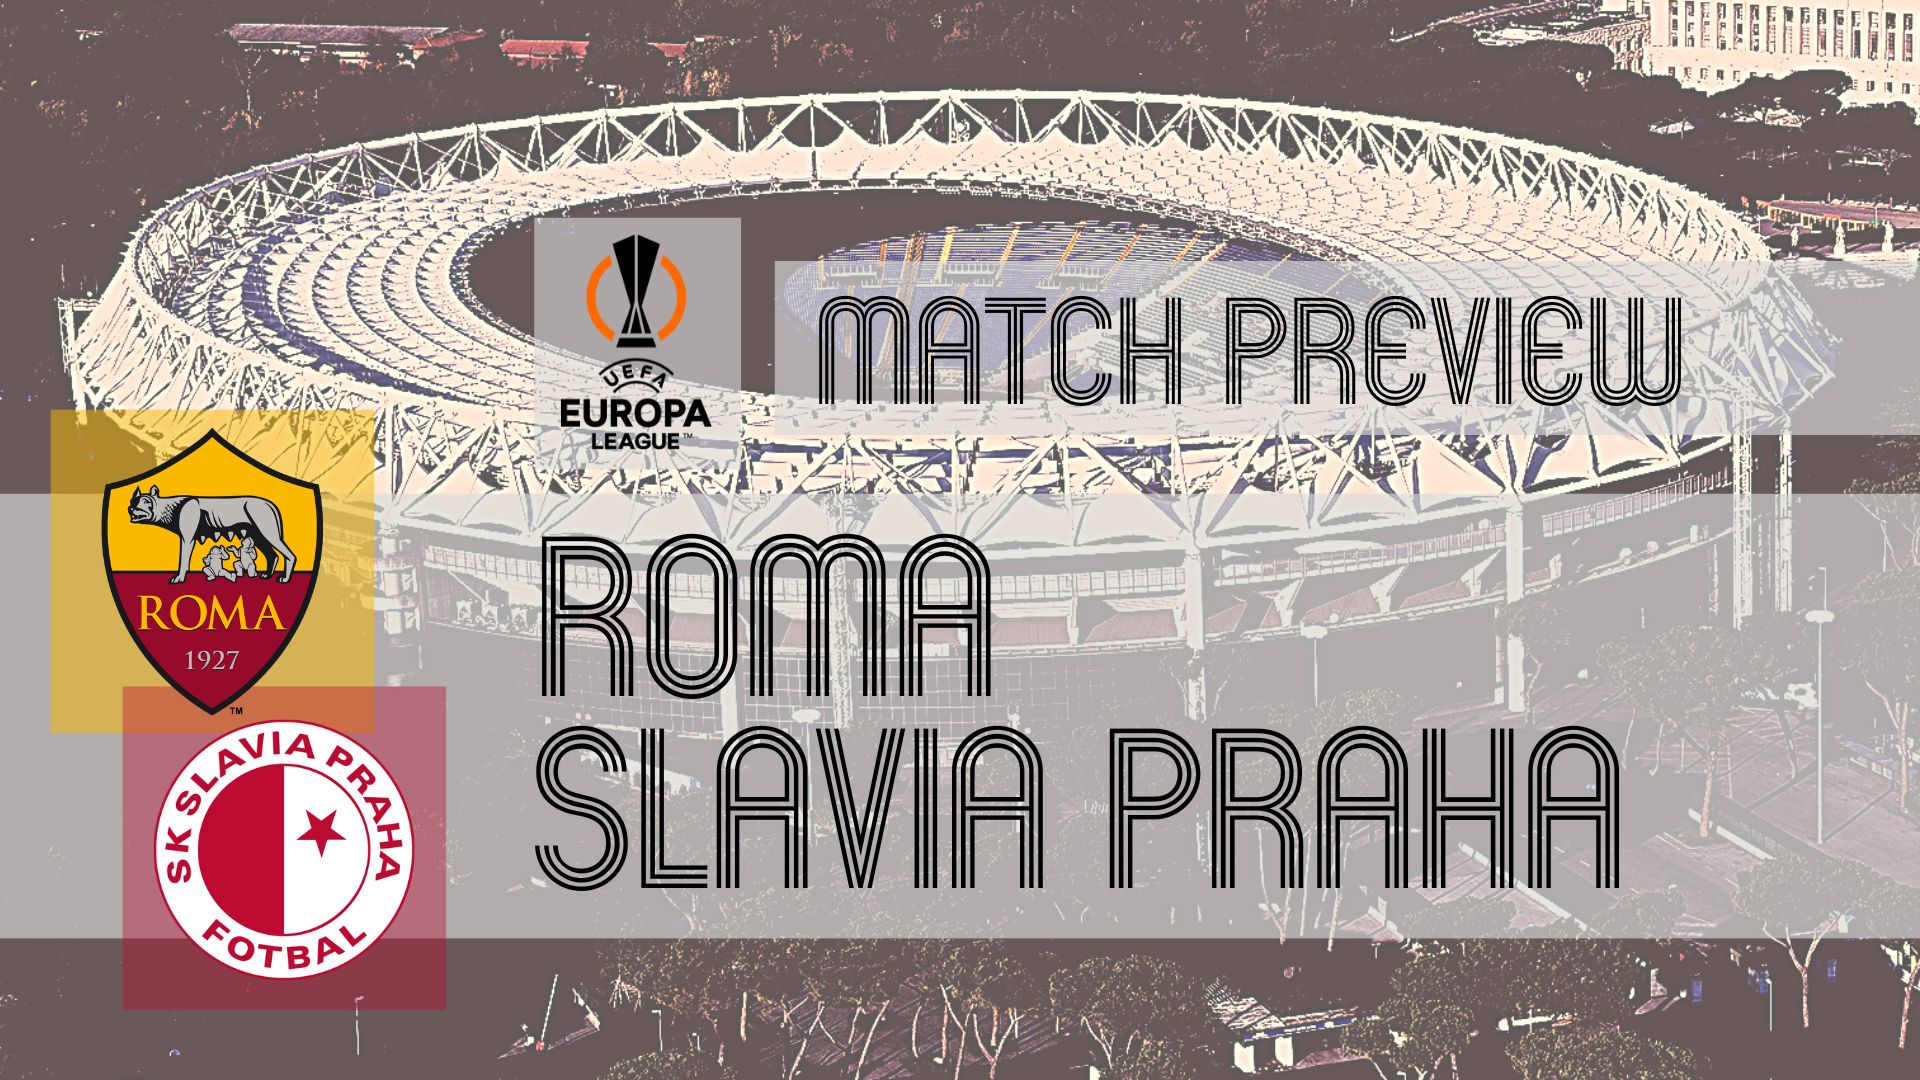 Roma 2-0 Slavia P.: results, summary and goals